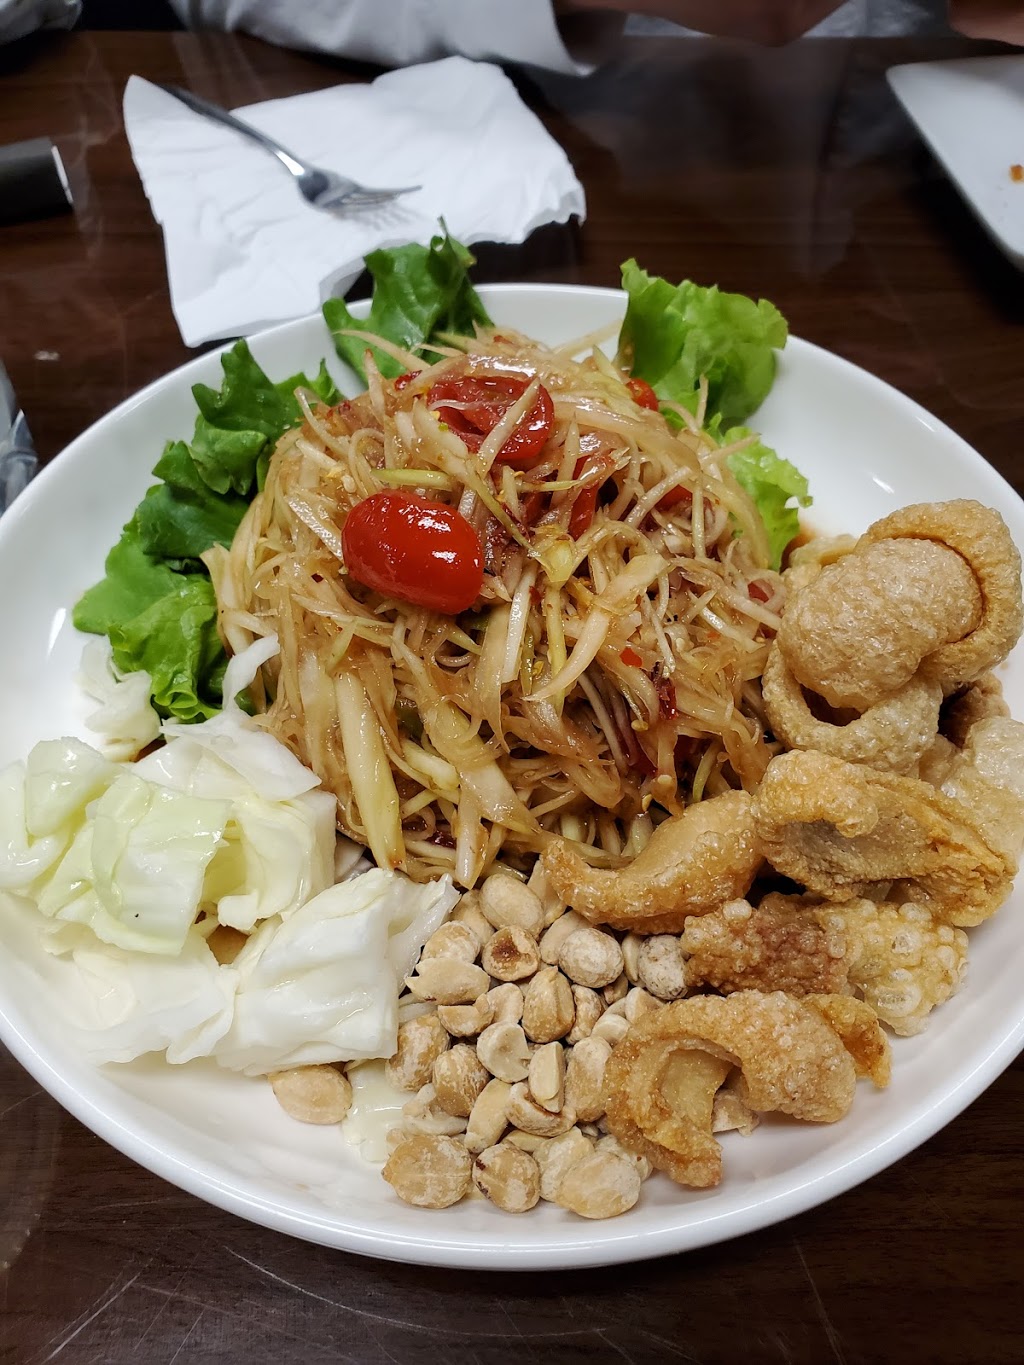 Asiannights Lao-Thai Cuisine & Bar | 2905 N Beach St, Fort Worth, TX 76111 | Phone: (682) 841-1116